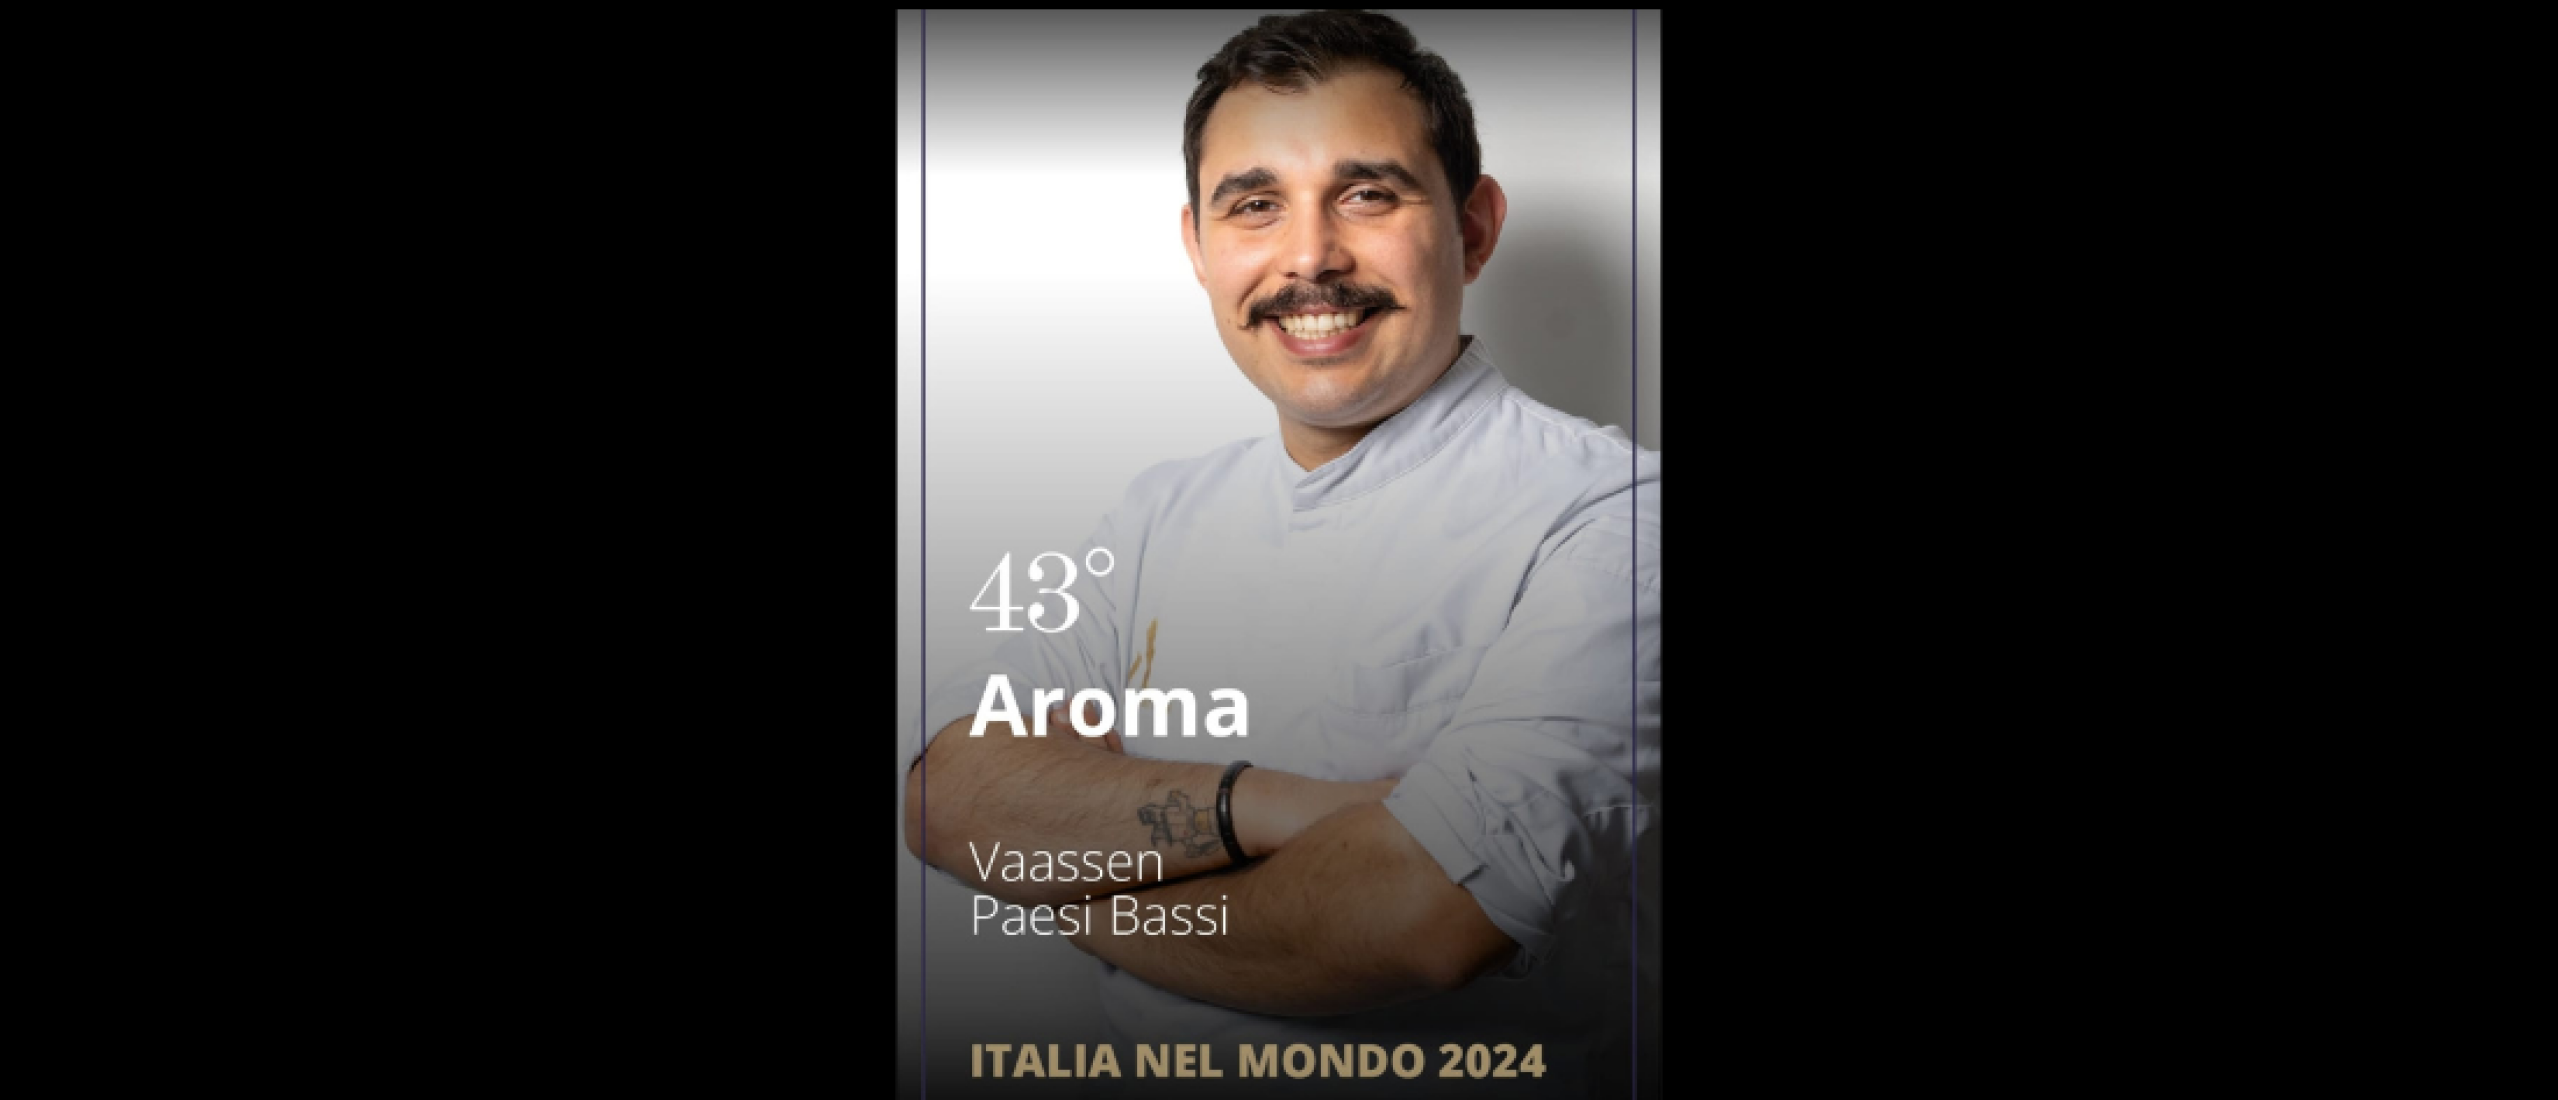 Restaurant Aroma Italian Fine Dining op plek 43 in lijst van top 50 Best Italian Restaurants in the World.